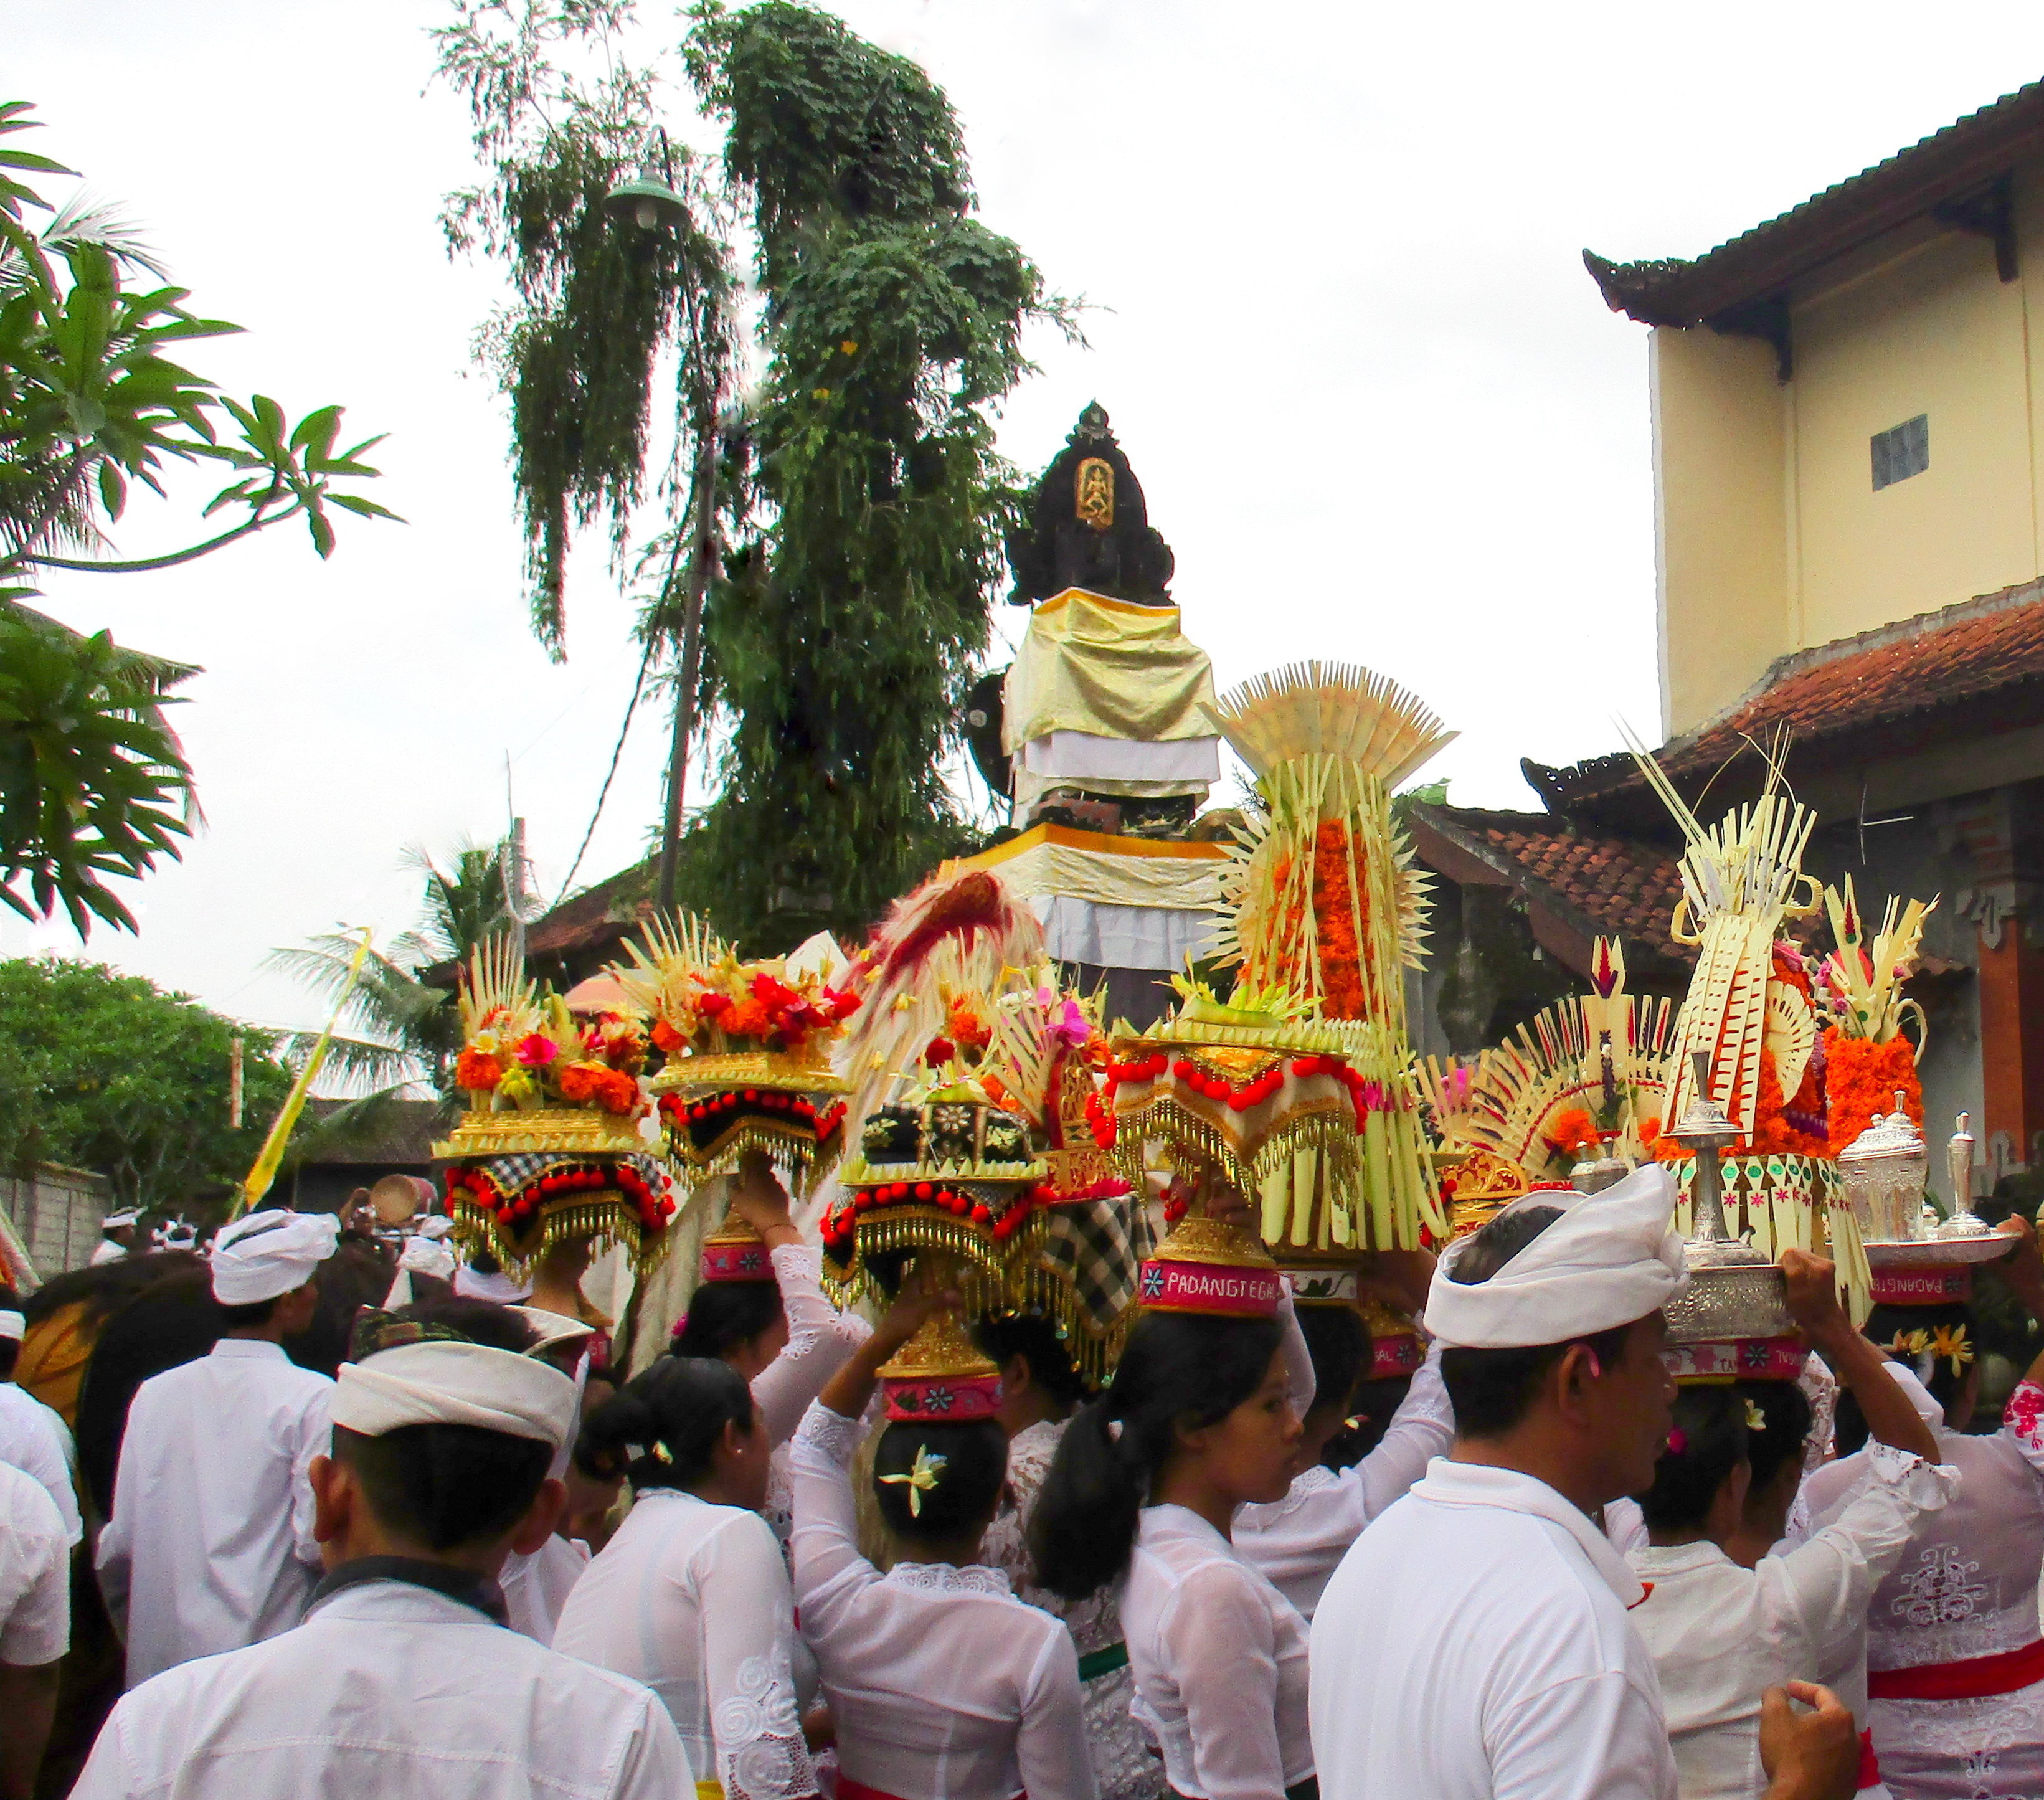 Village festival procession